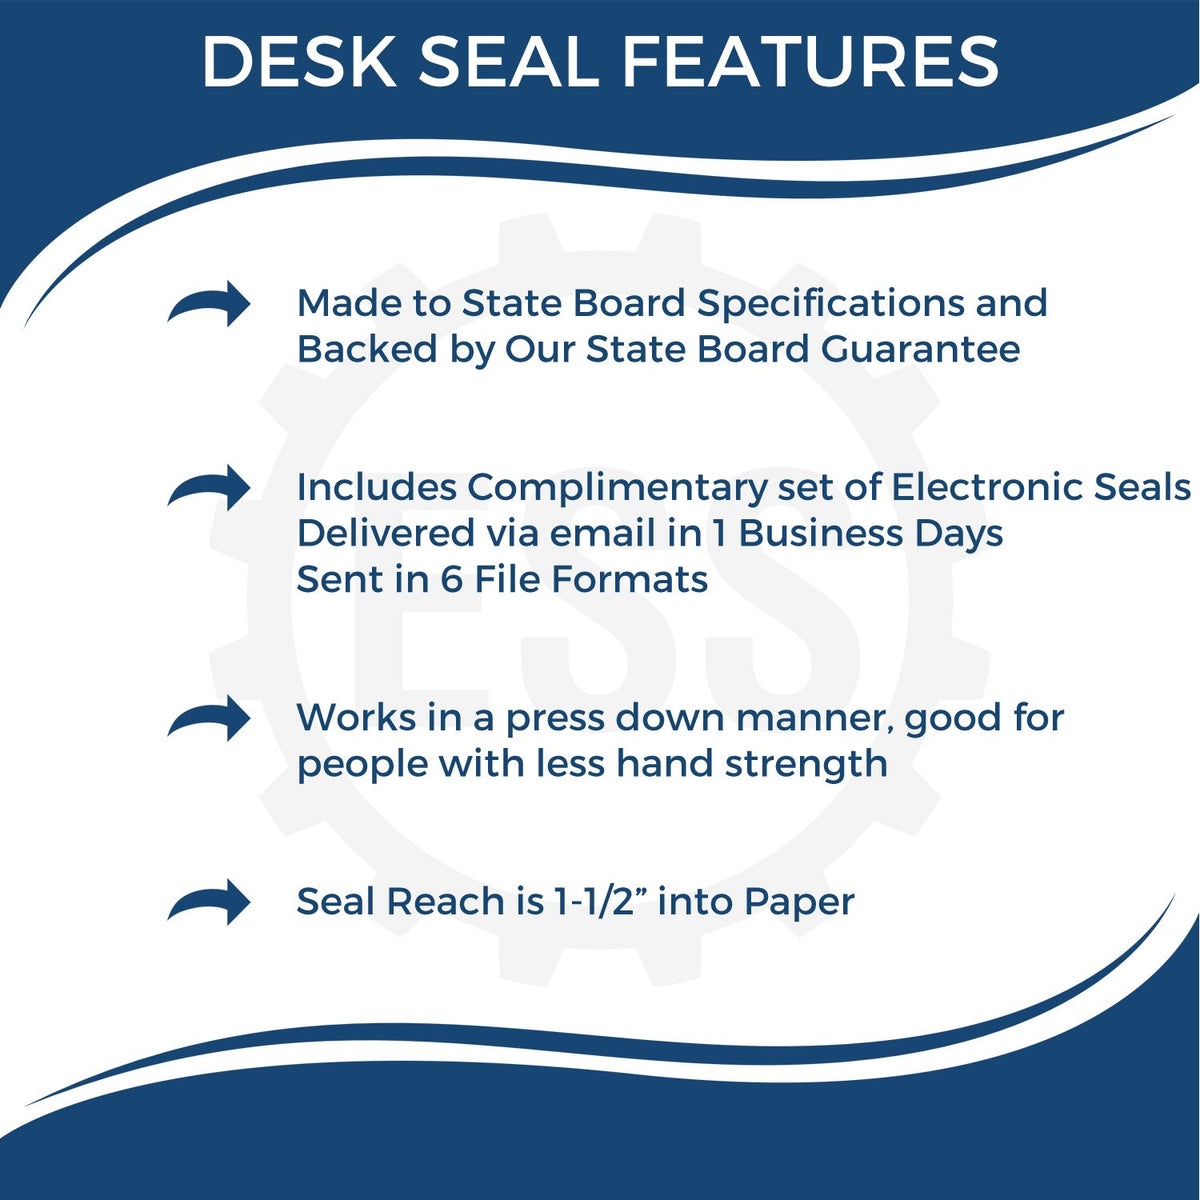 Ohio Engineer Desk Seal